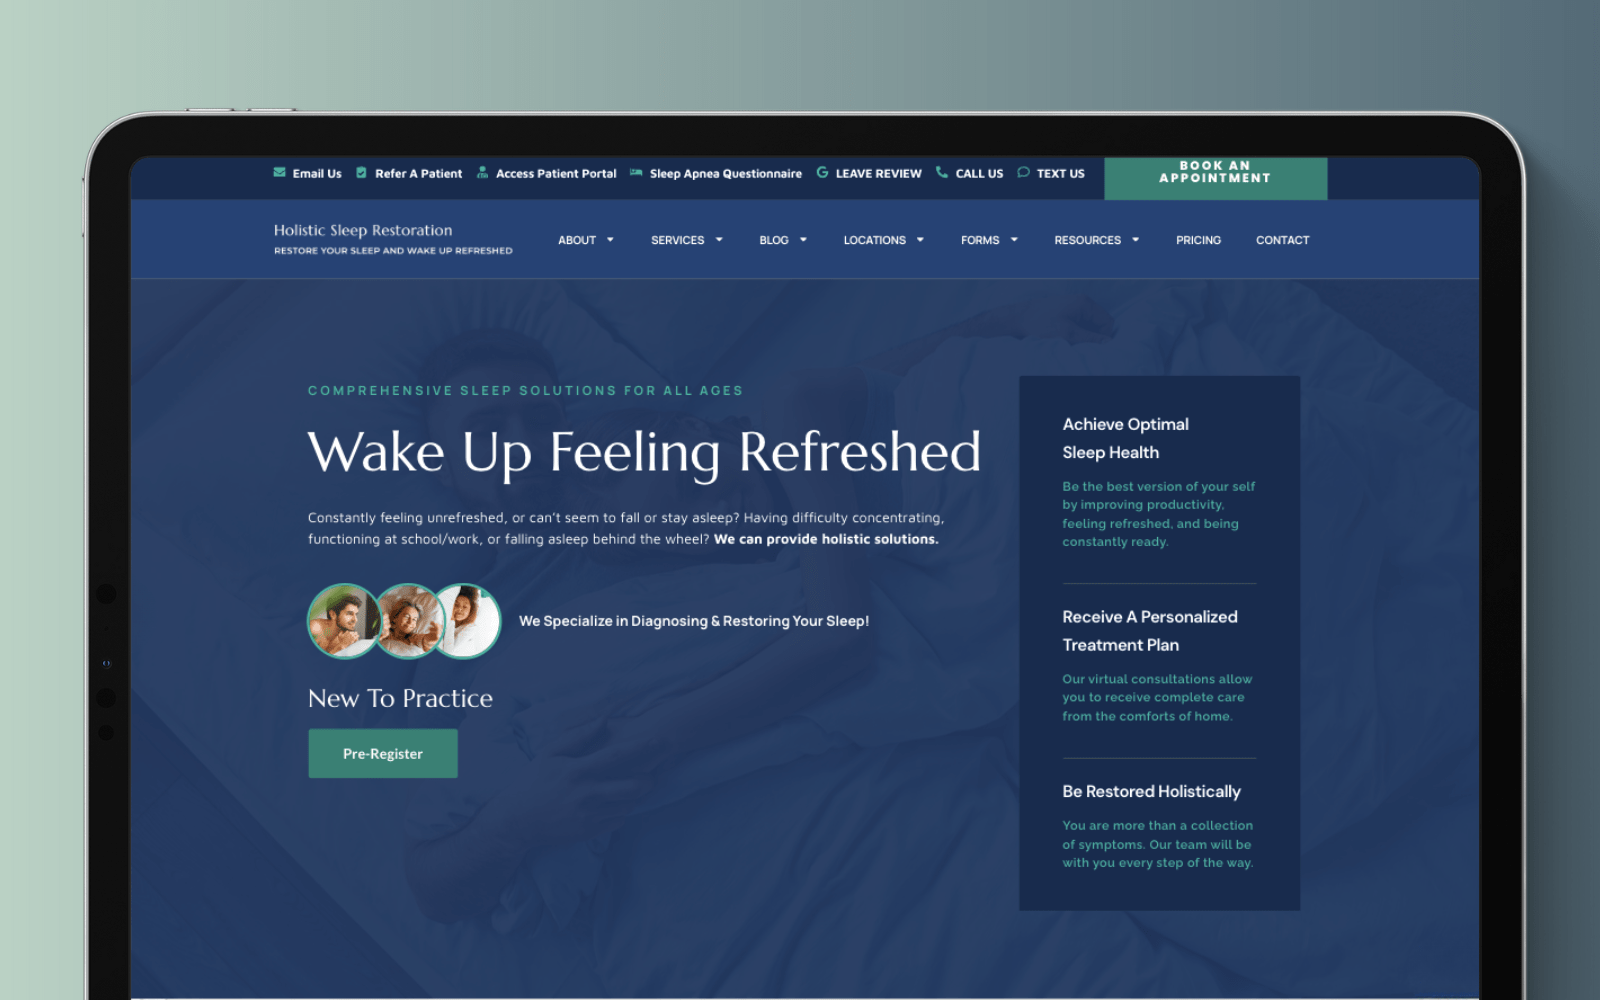 A sleek website design, symbolizing waking up feeling refreshed.